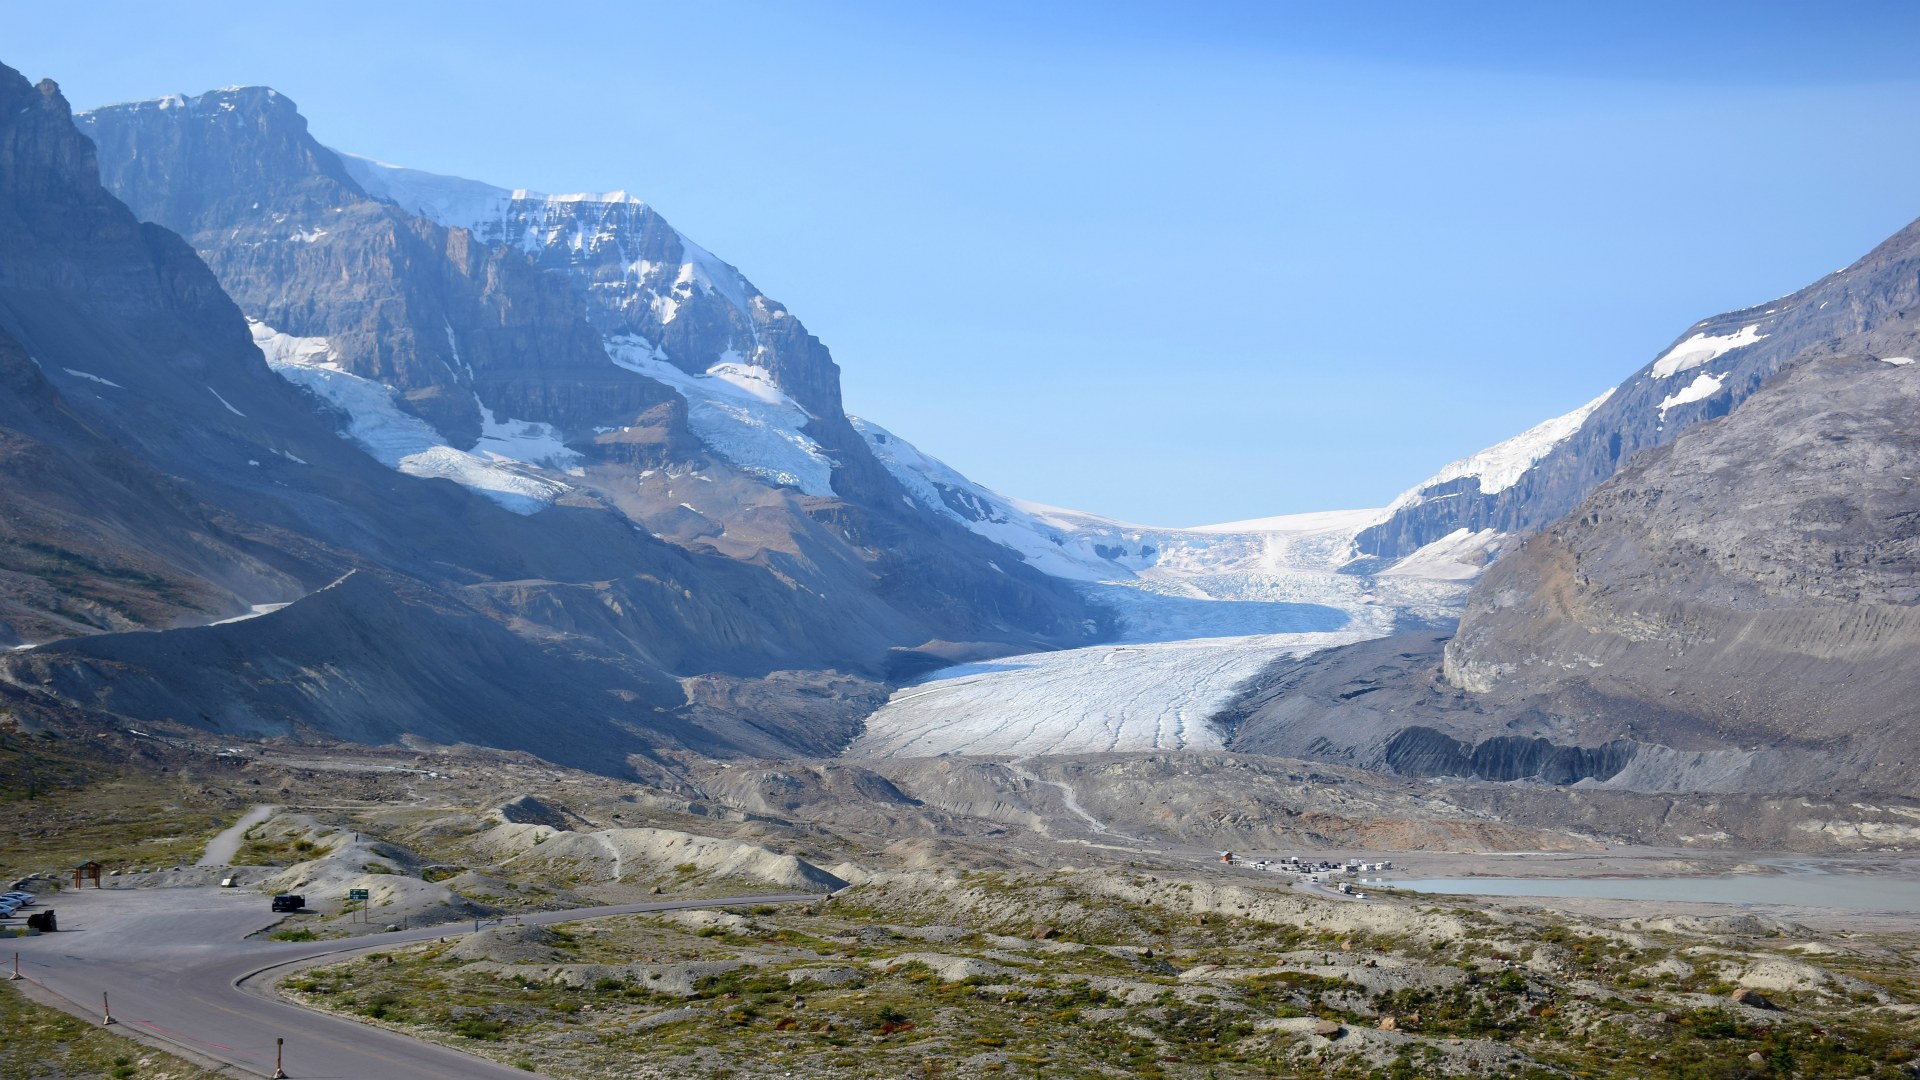 Athabasca Glacier, Jasper National Park